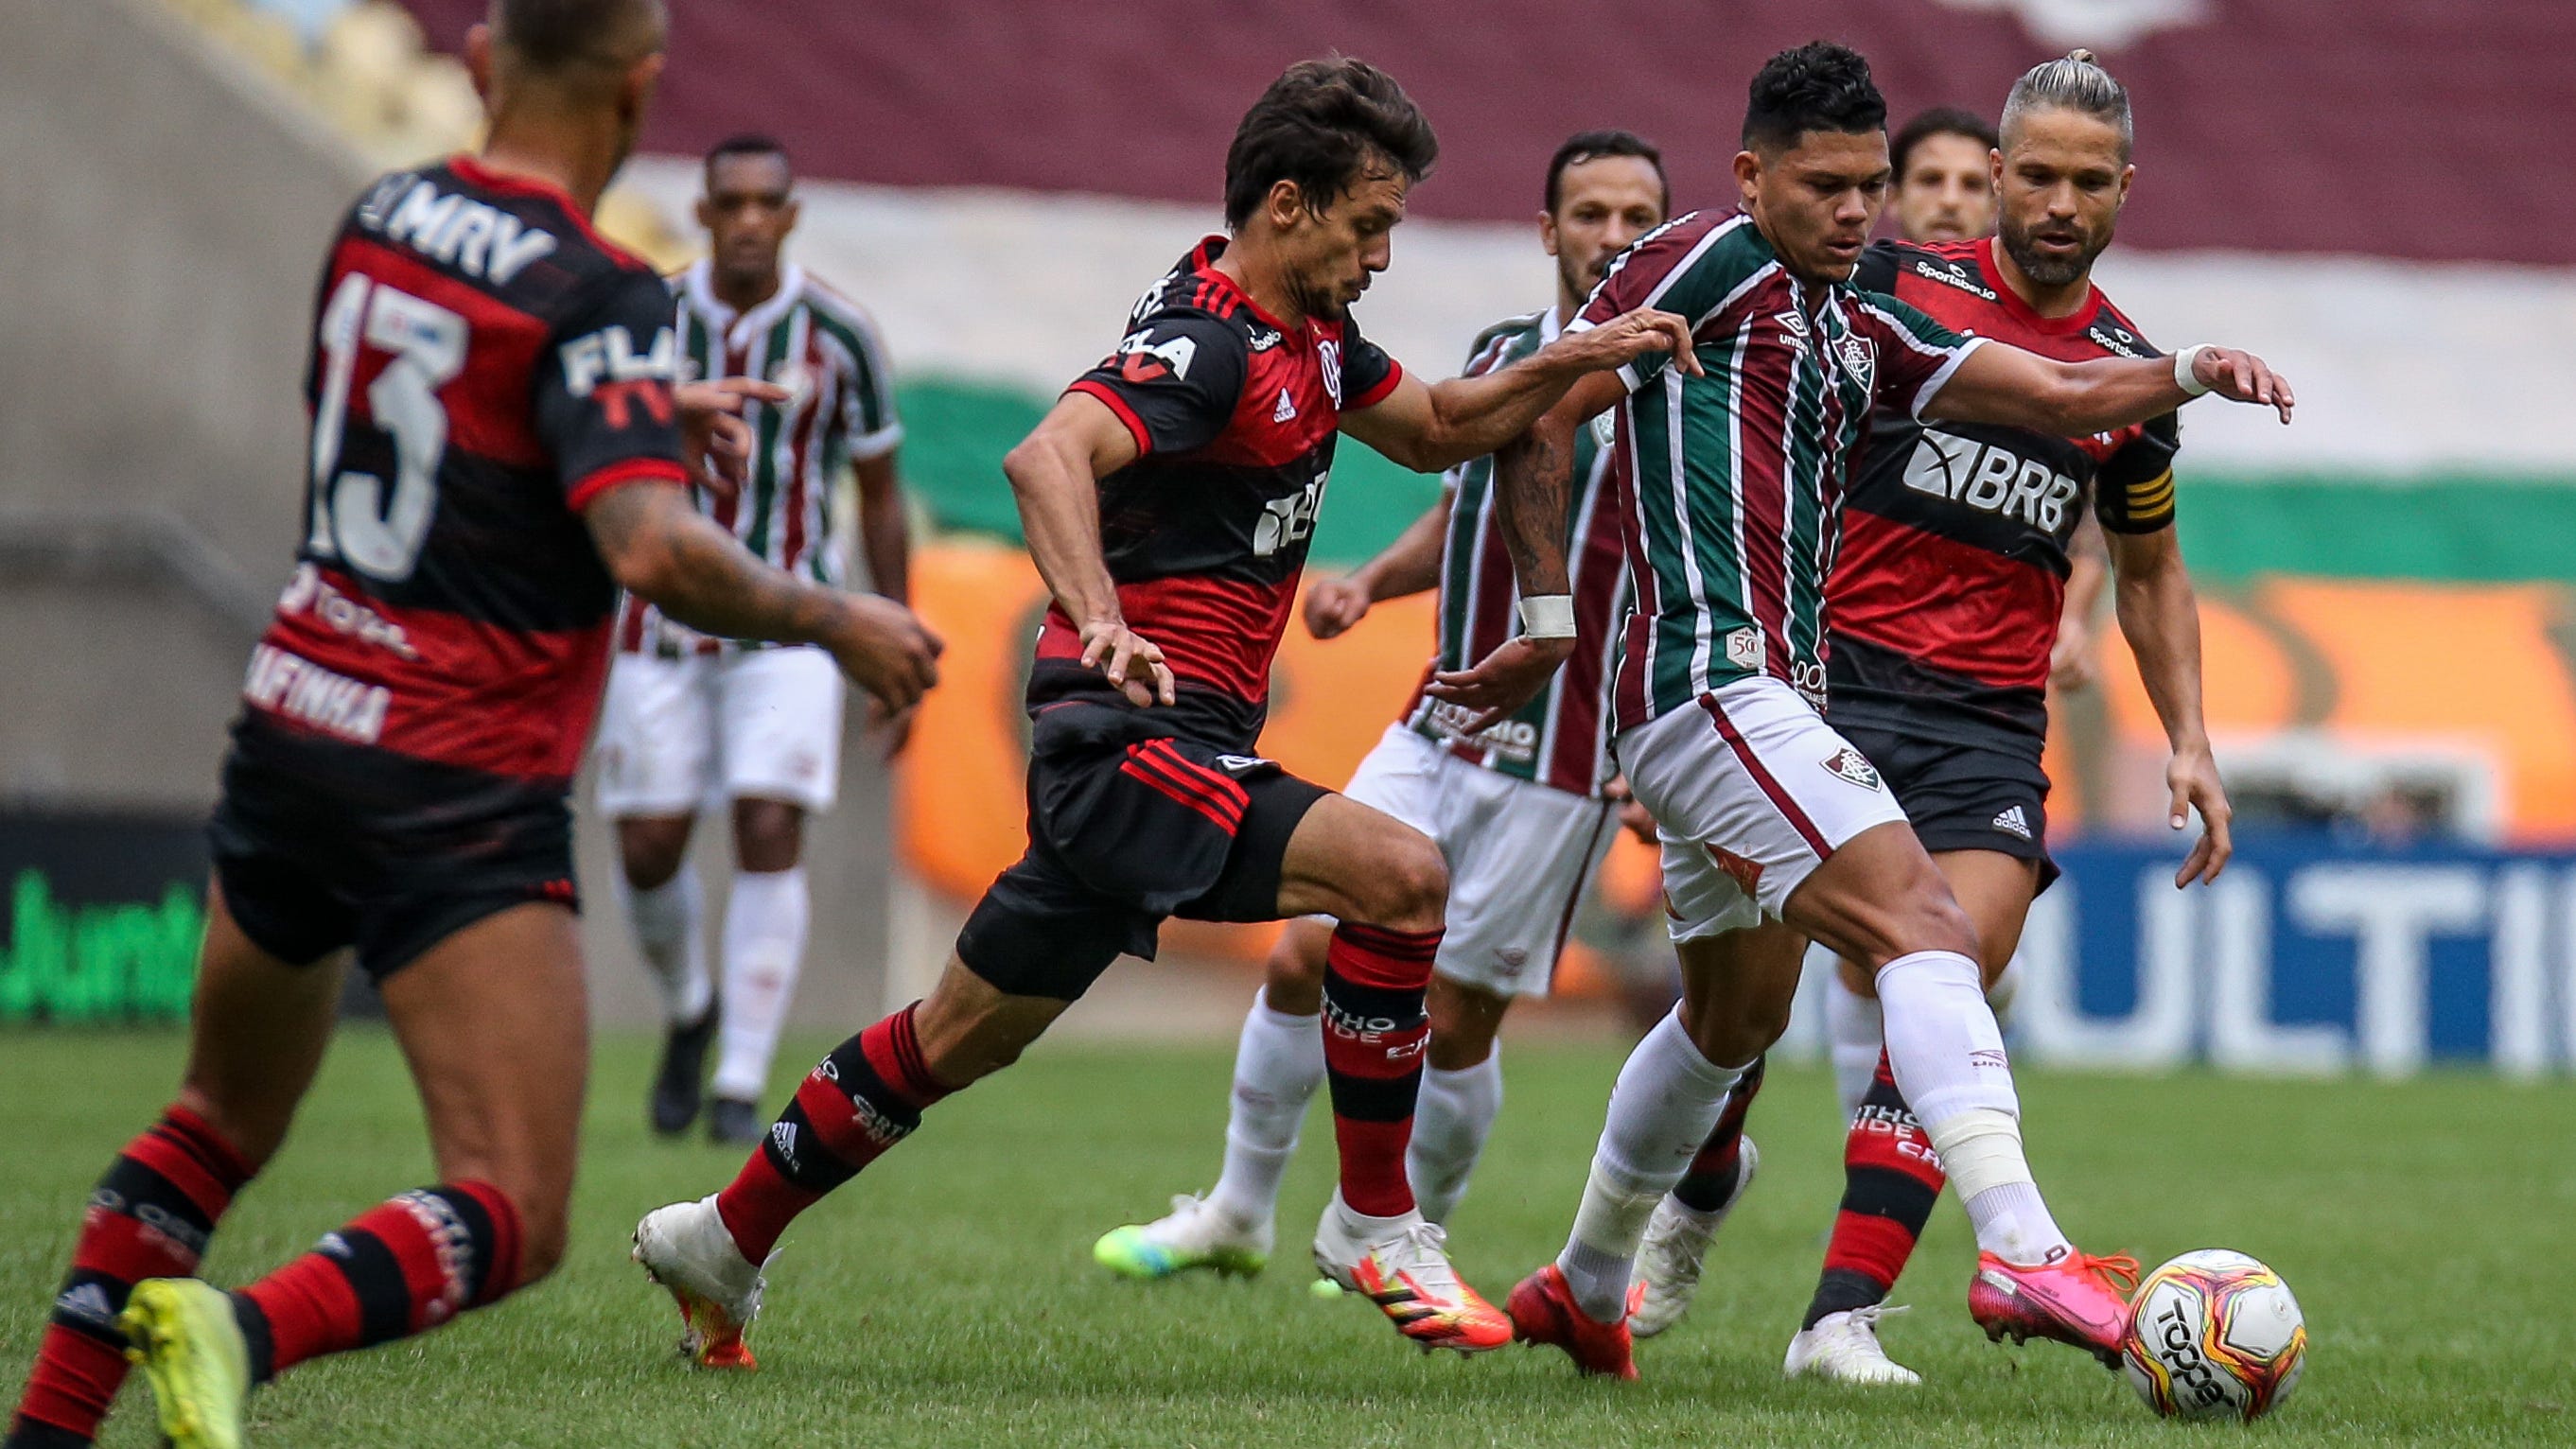 Clássico Carioca: Flamengo e Fluminense se enfrentaram em partida